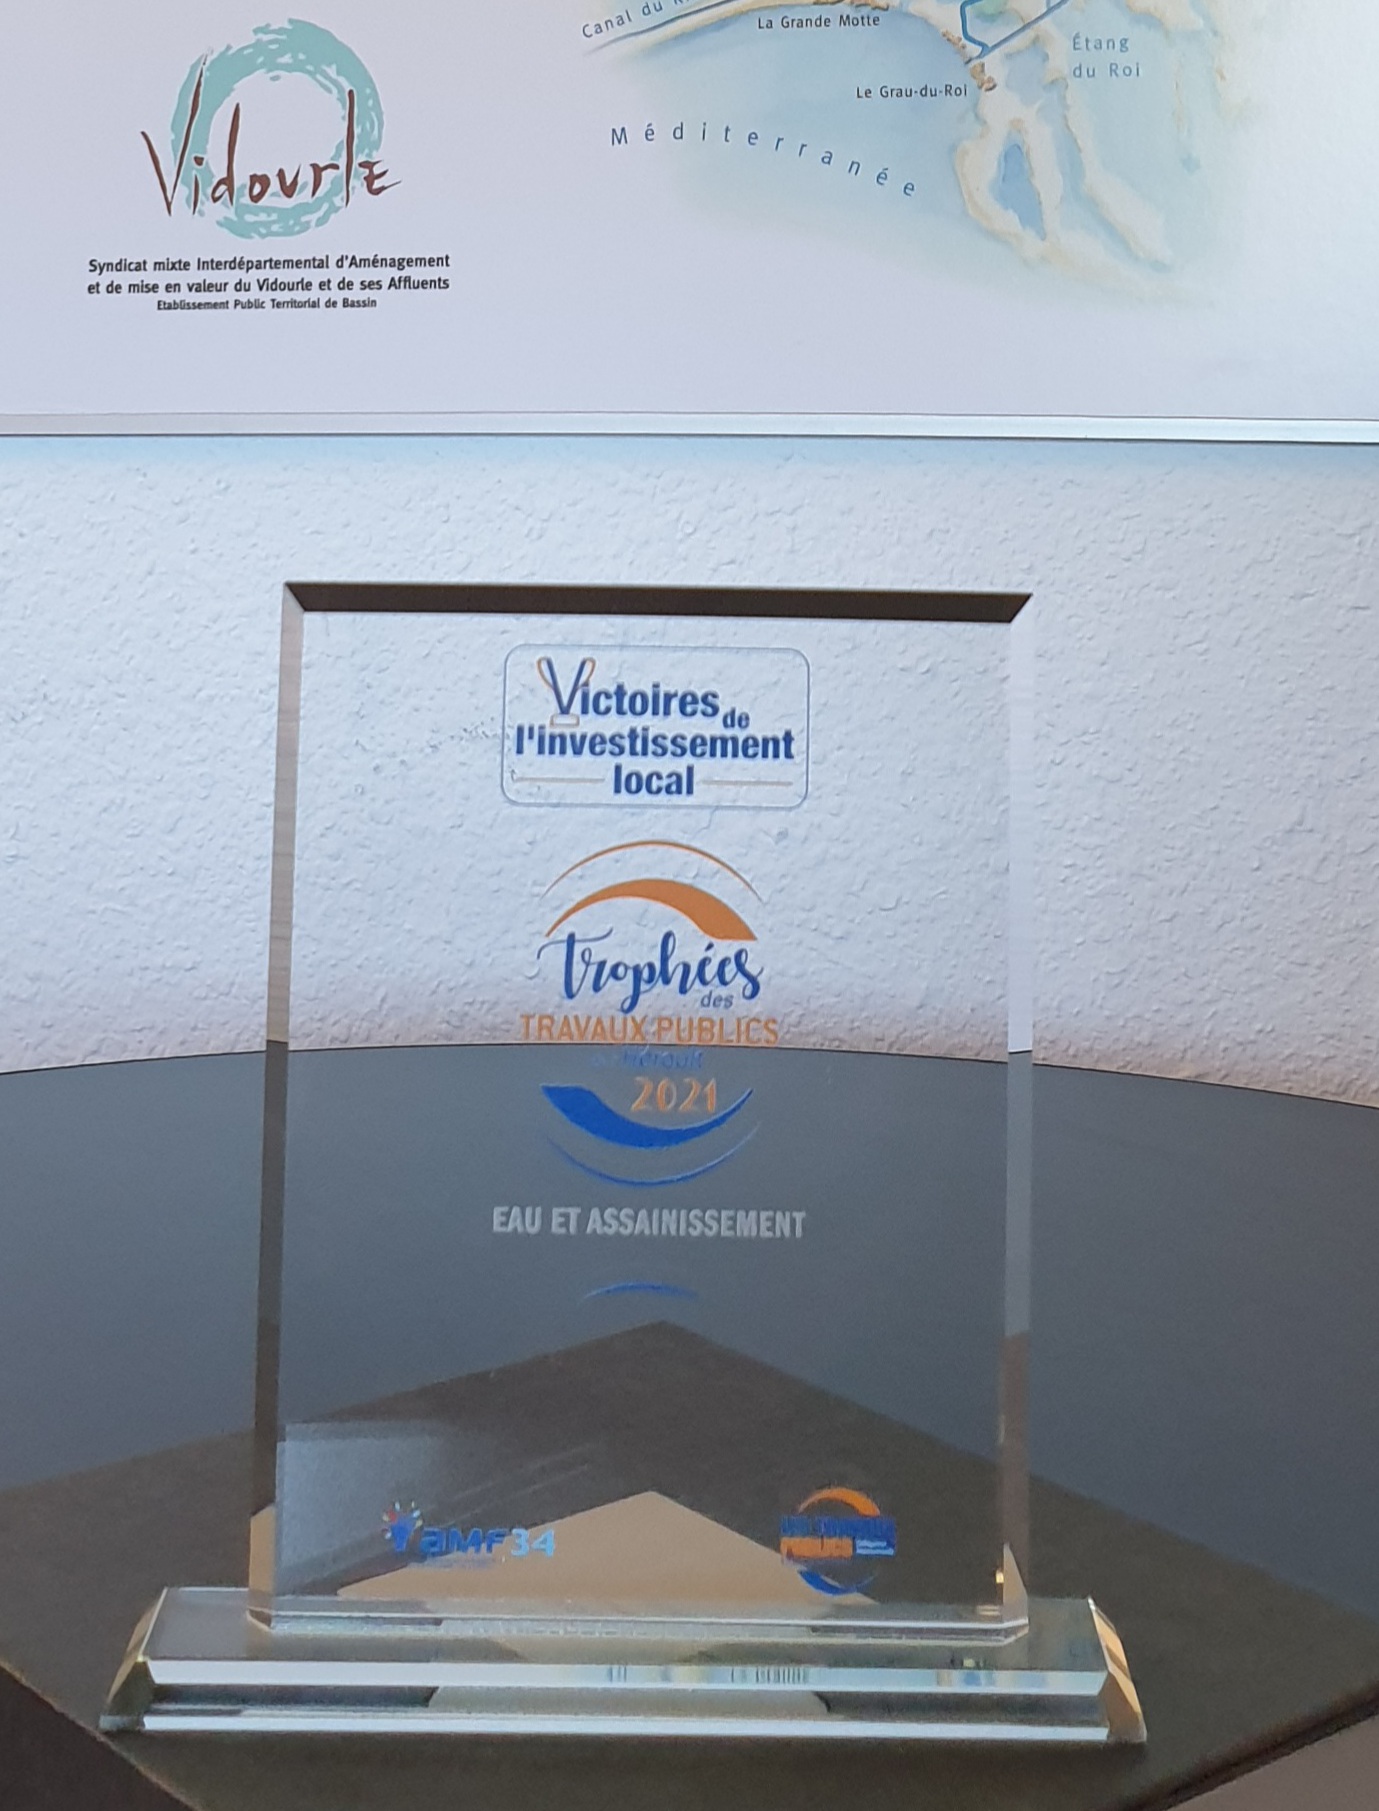 L’EPTB Vidourle, lauréat du prix « Victoires de l’Investissement Local de l’Hérault » dans la catégorie « Réalisations Eau et Assainissement ».